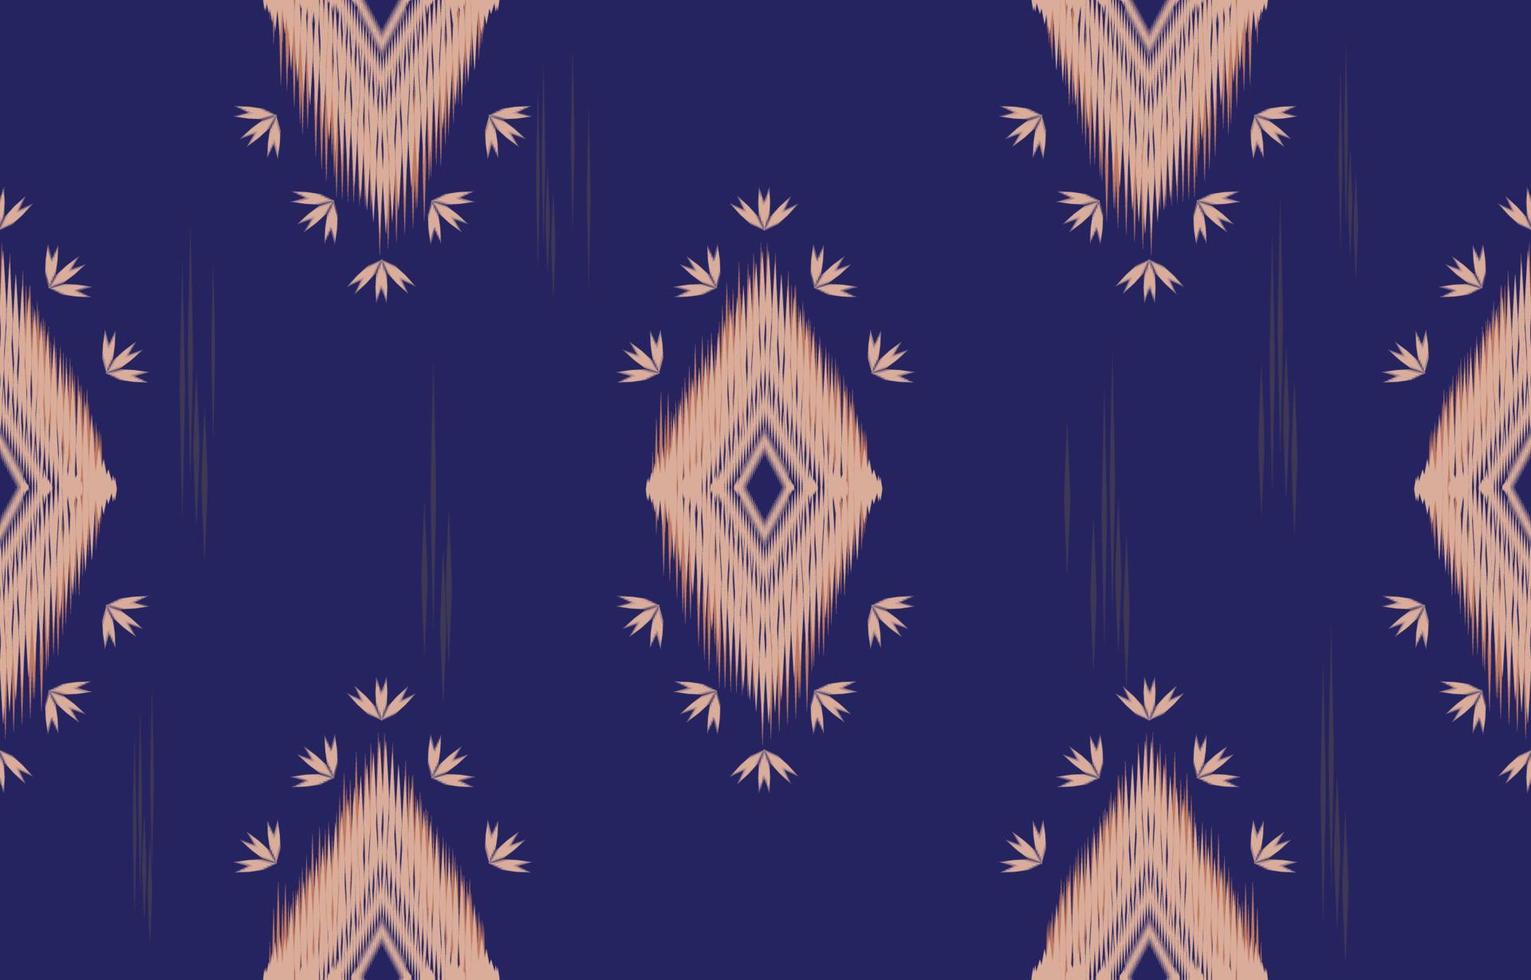 marrón y azul ikat de patrones sin fisuras geométrico étnico oriental bordado tradicional style.design para fondo, alfombra, estera, papel pintado, ropa, envoltura, batik, tela, ilustración vectorial. vector